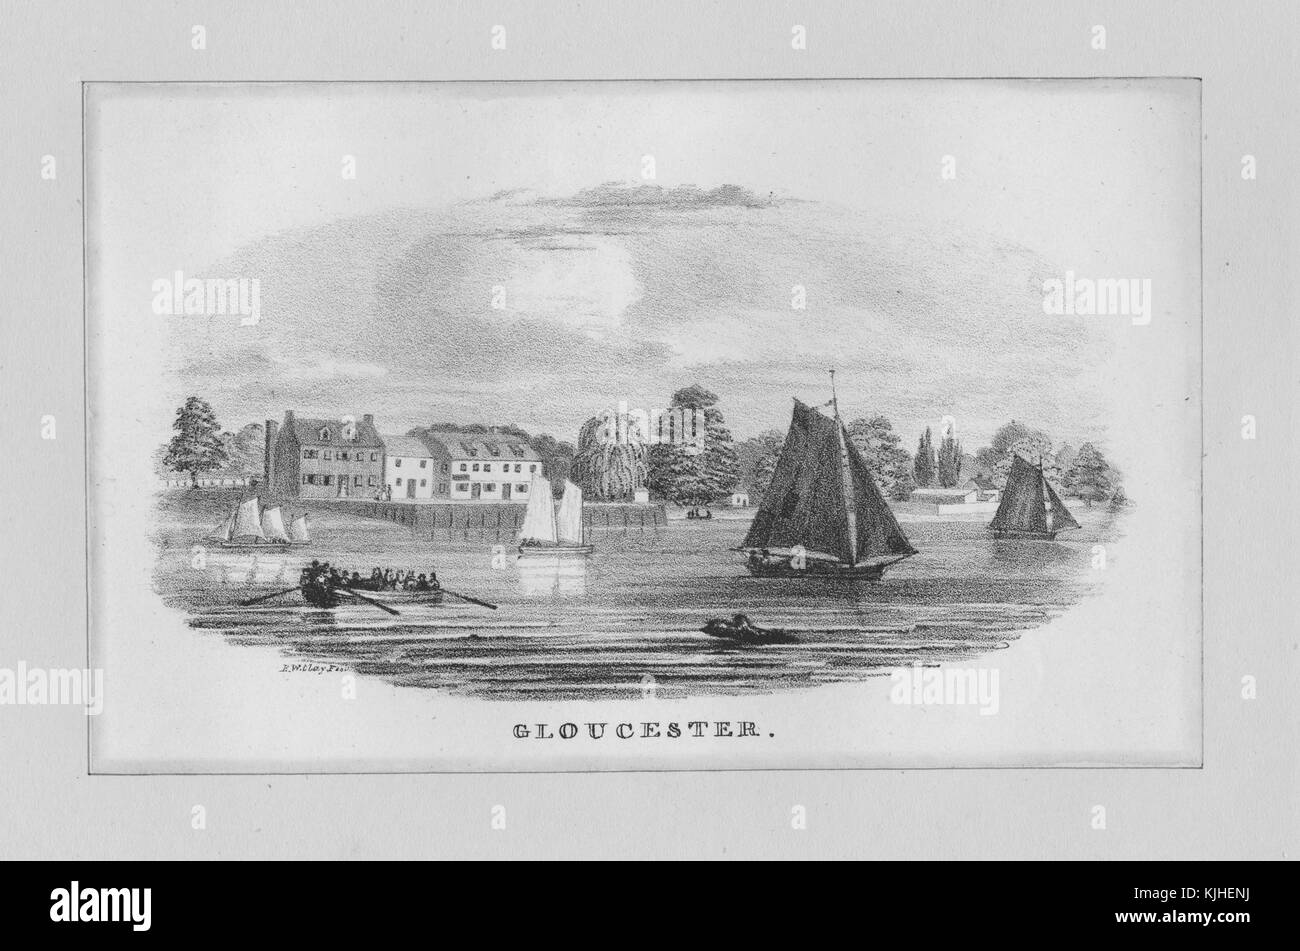 Lithograf mit Blick auf Gloucester, eine Stadt-, Bezirks- und Bezirksstadt von Gloucestershire im Südwesten Englands, liegt in der Nähe der walisischen Grenze. Und auf dem Fluss Severn können vom Wasser aus Bauwerke am Ufer gesehen werden, Boote und Menschen auf einem Kanu im Wasser, England, 1800. Aus der New York Public Library. Stockfoto